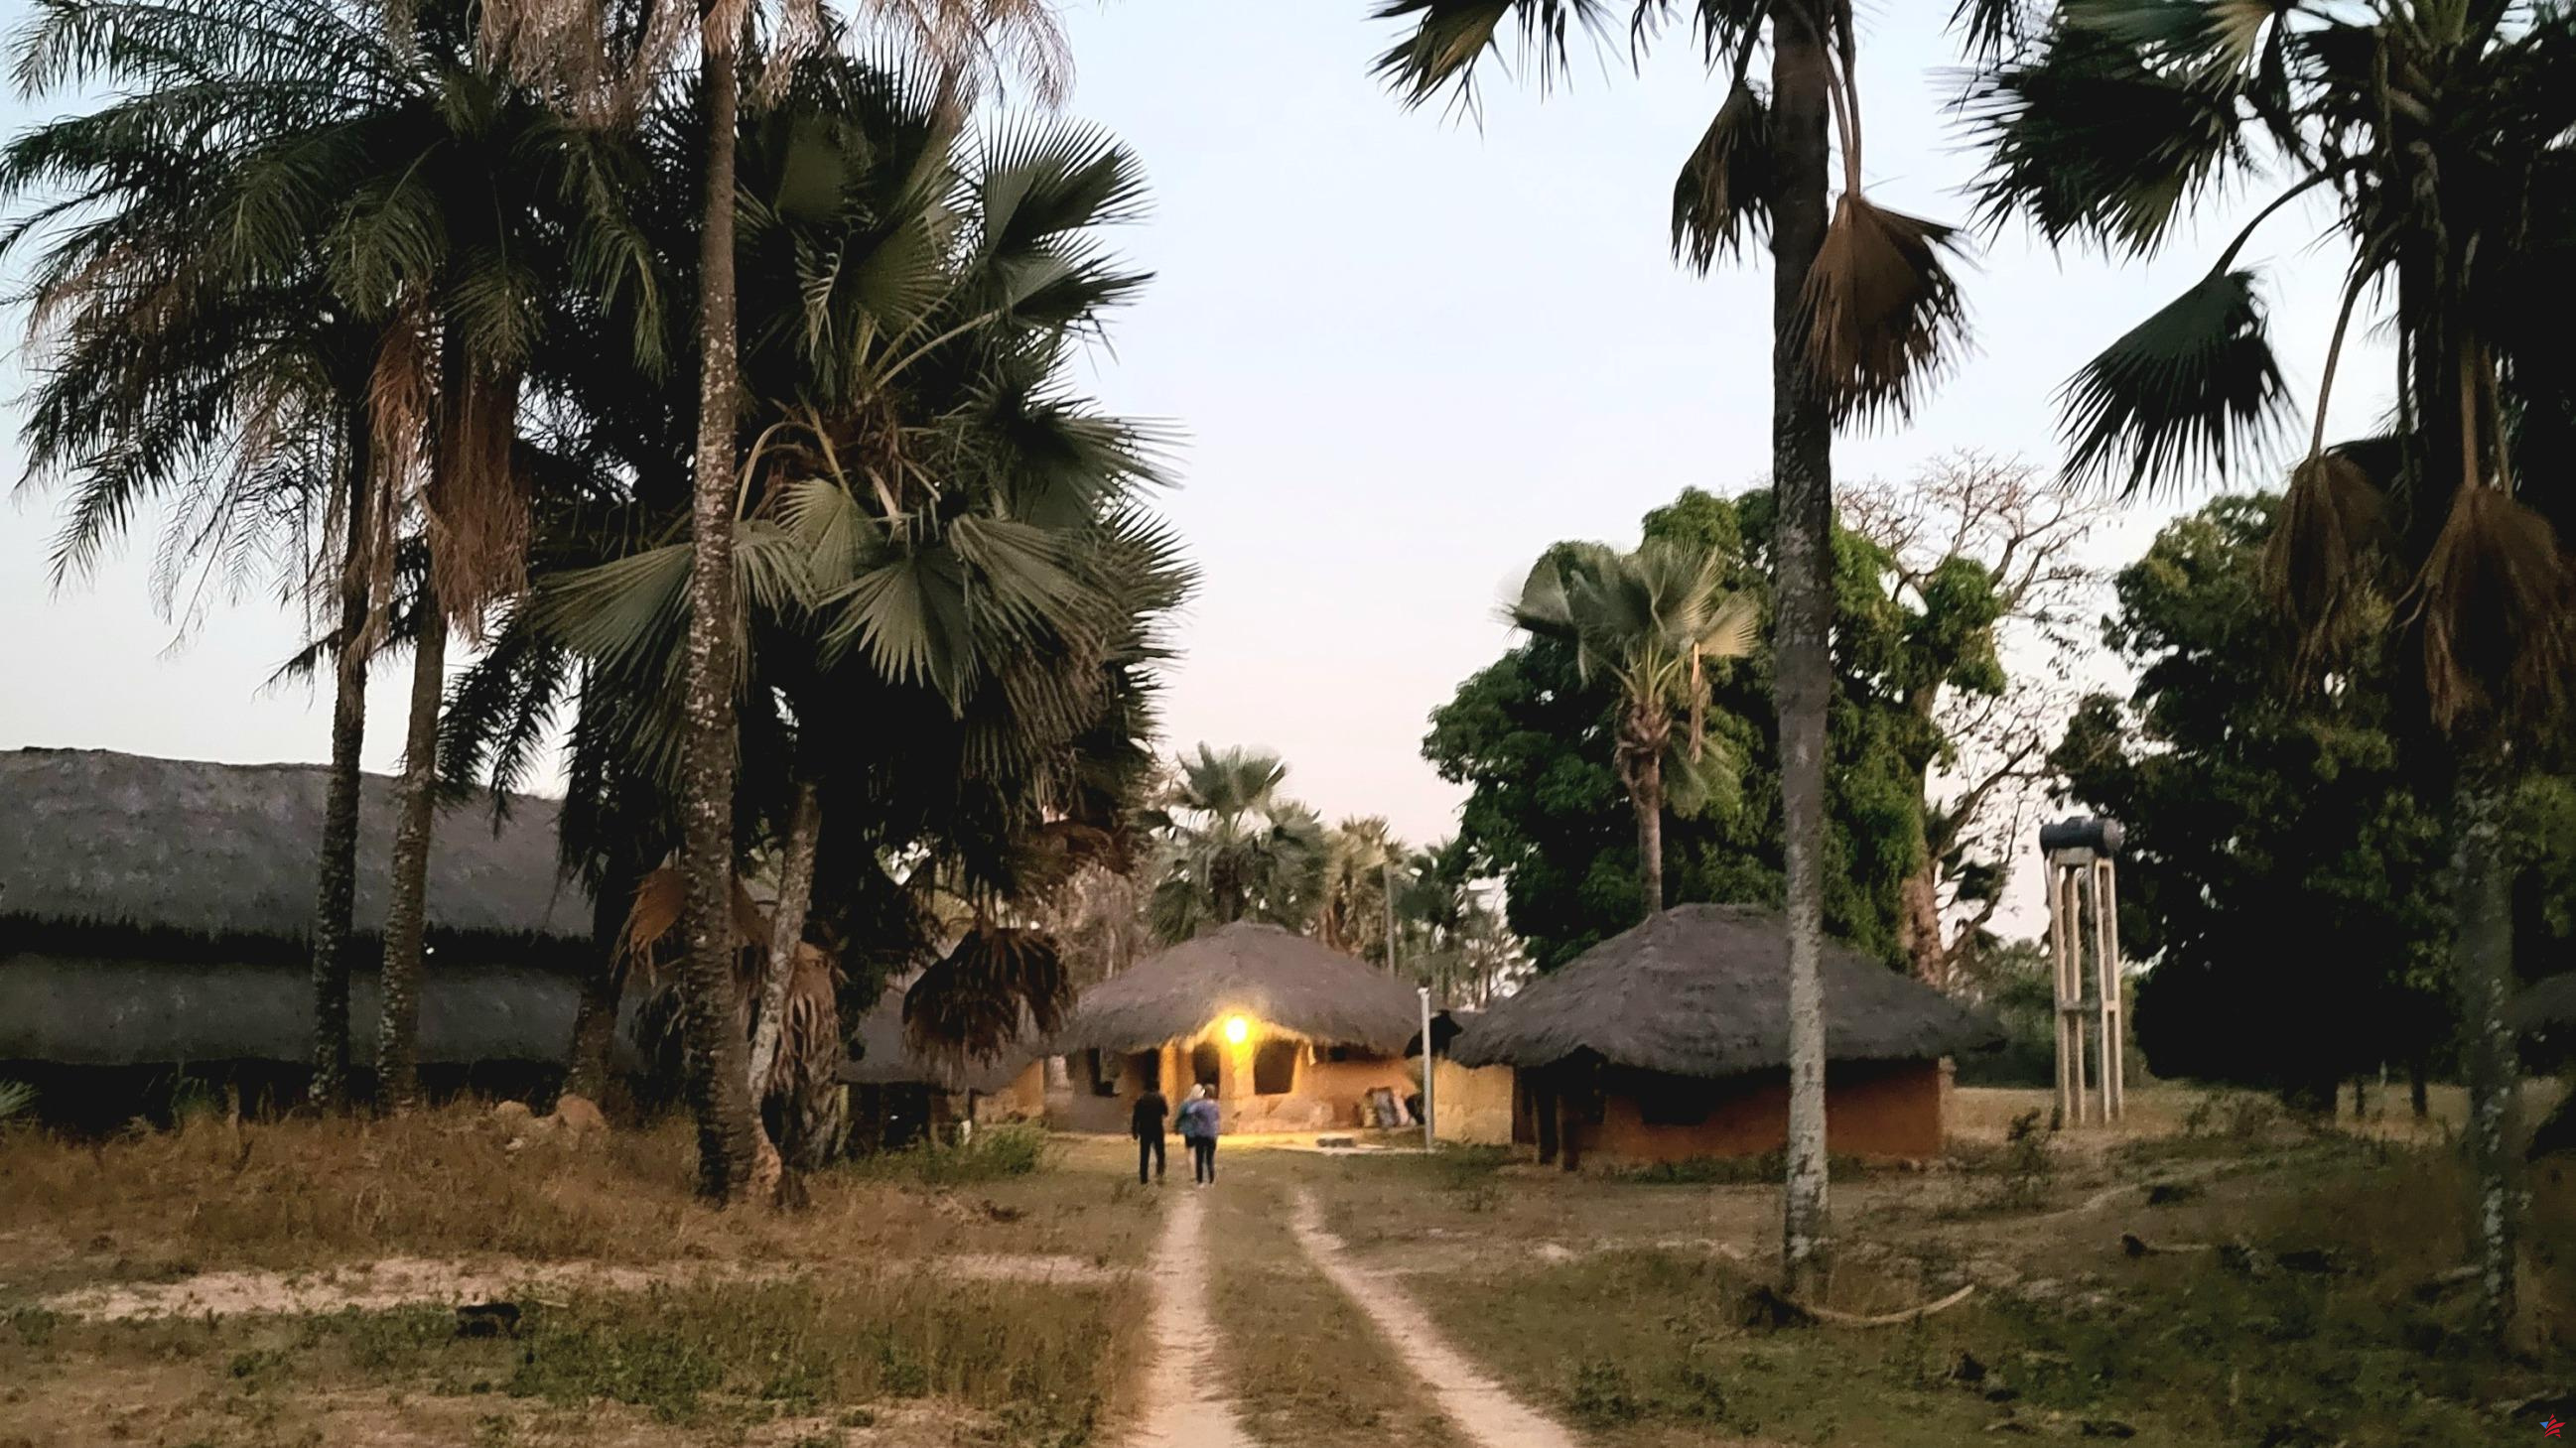 Ruralidad, patrimonio, tradiciones locales: probamos un viaje “ético” en Casamance, Senegal